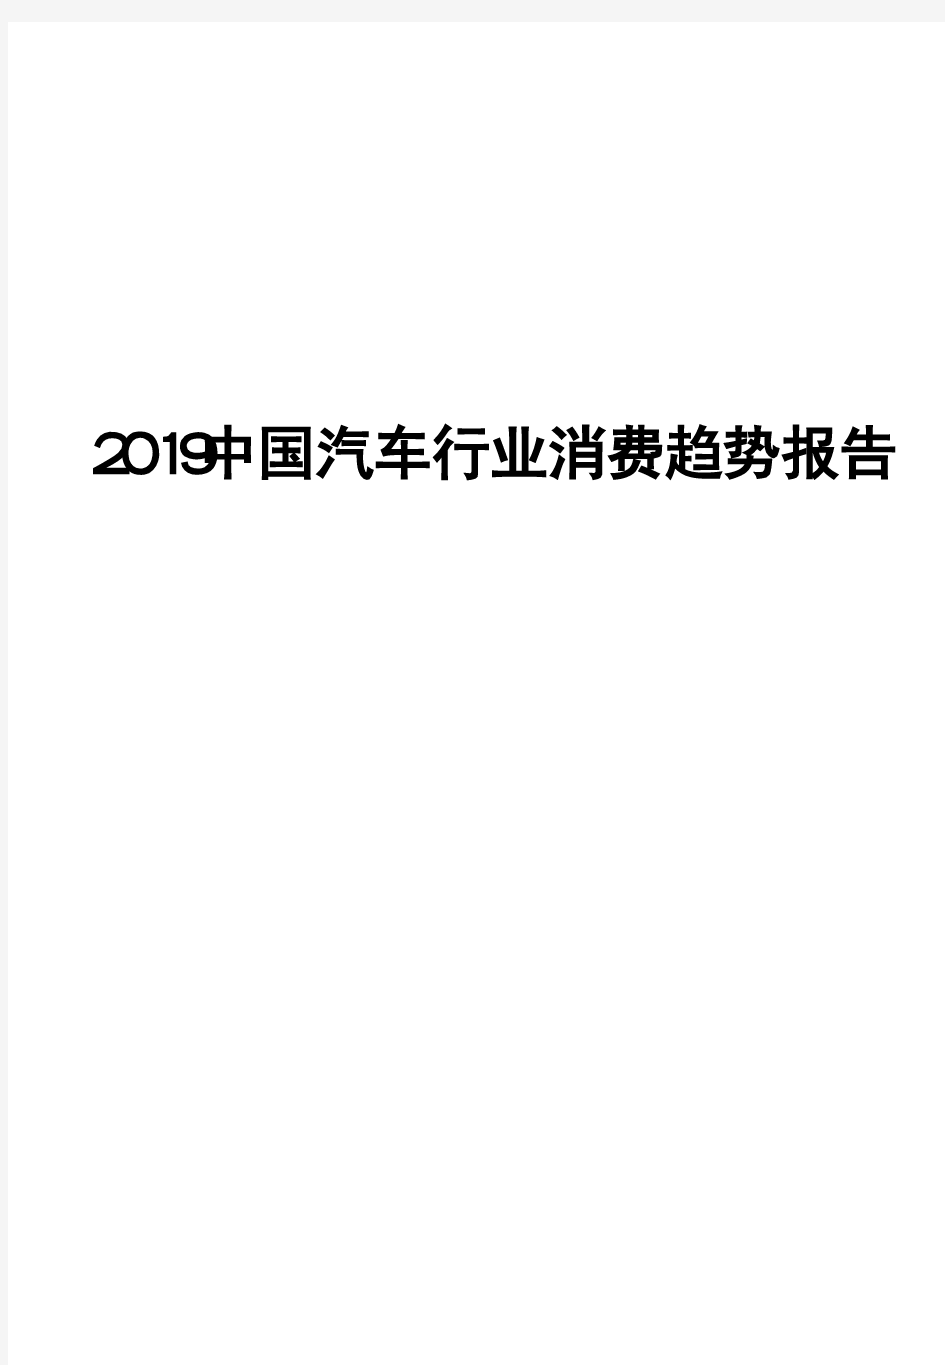 2019中国汽车行业消费趋势报告